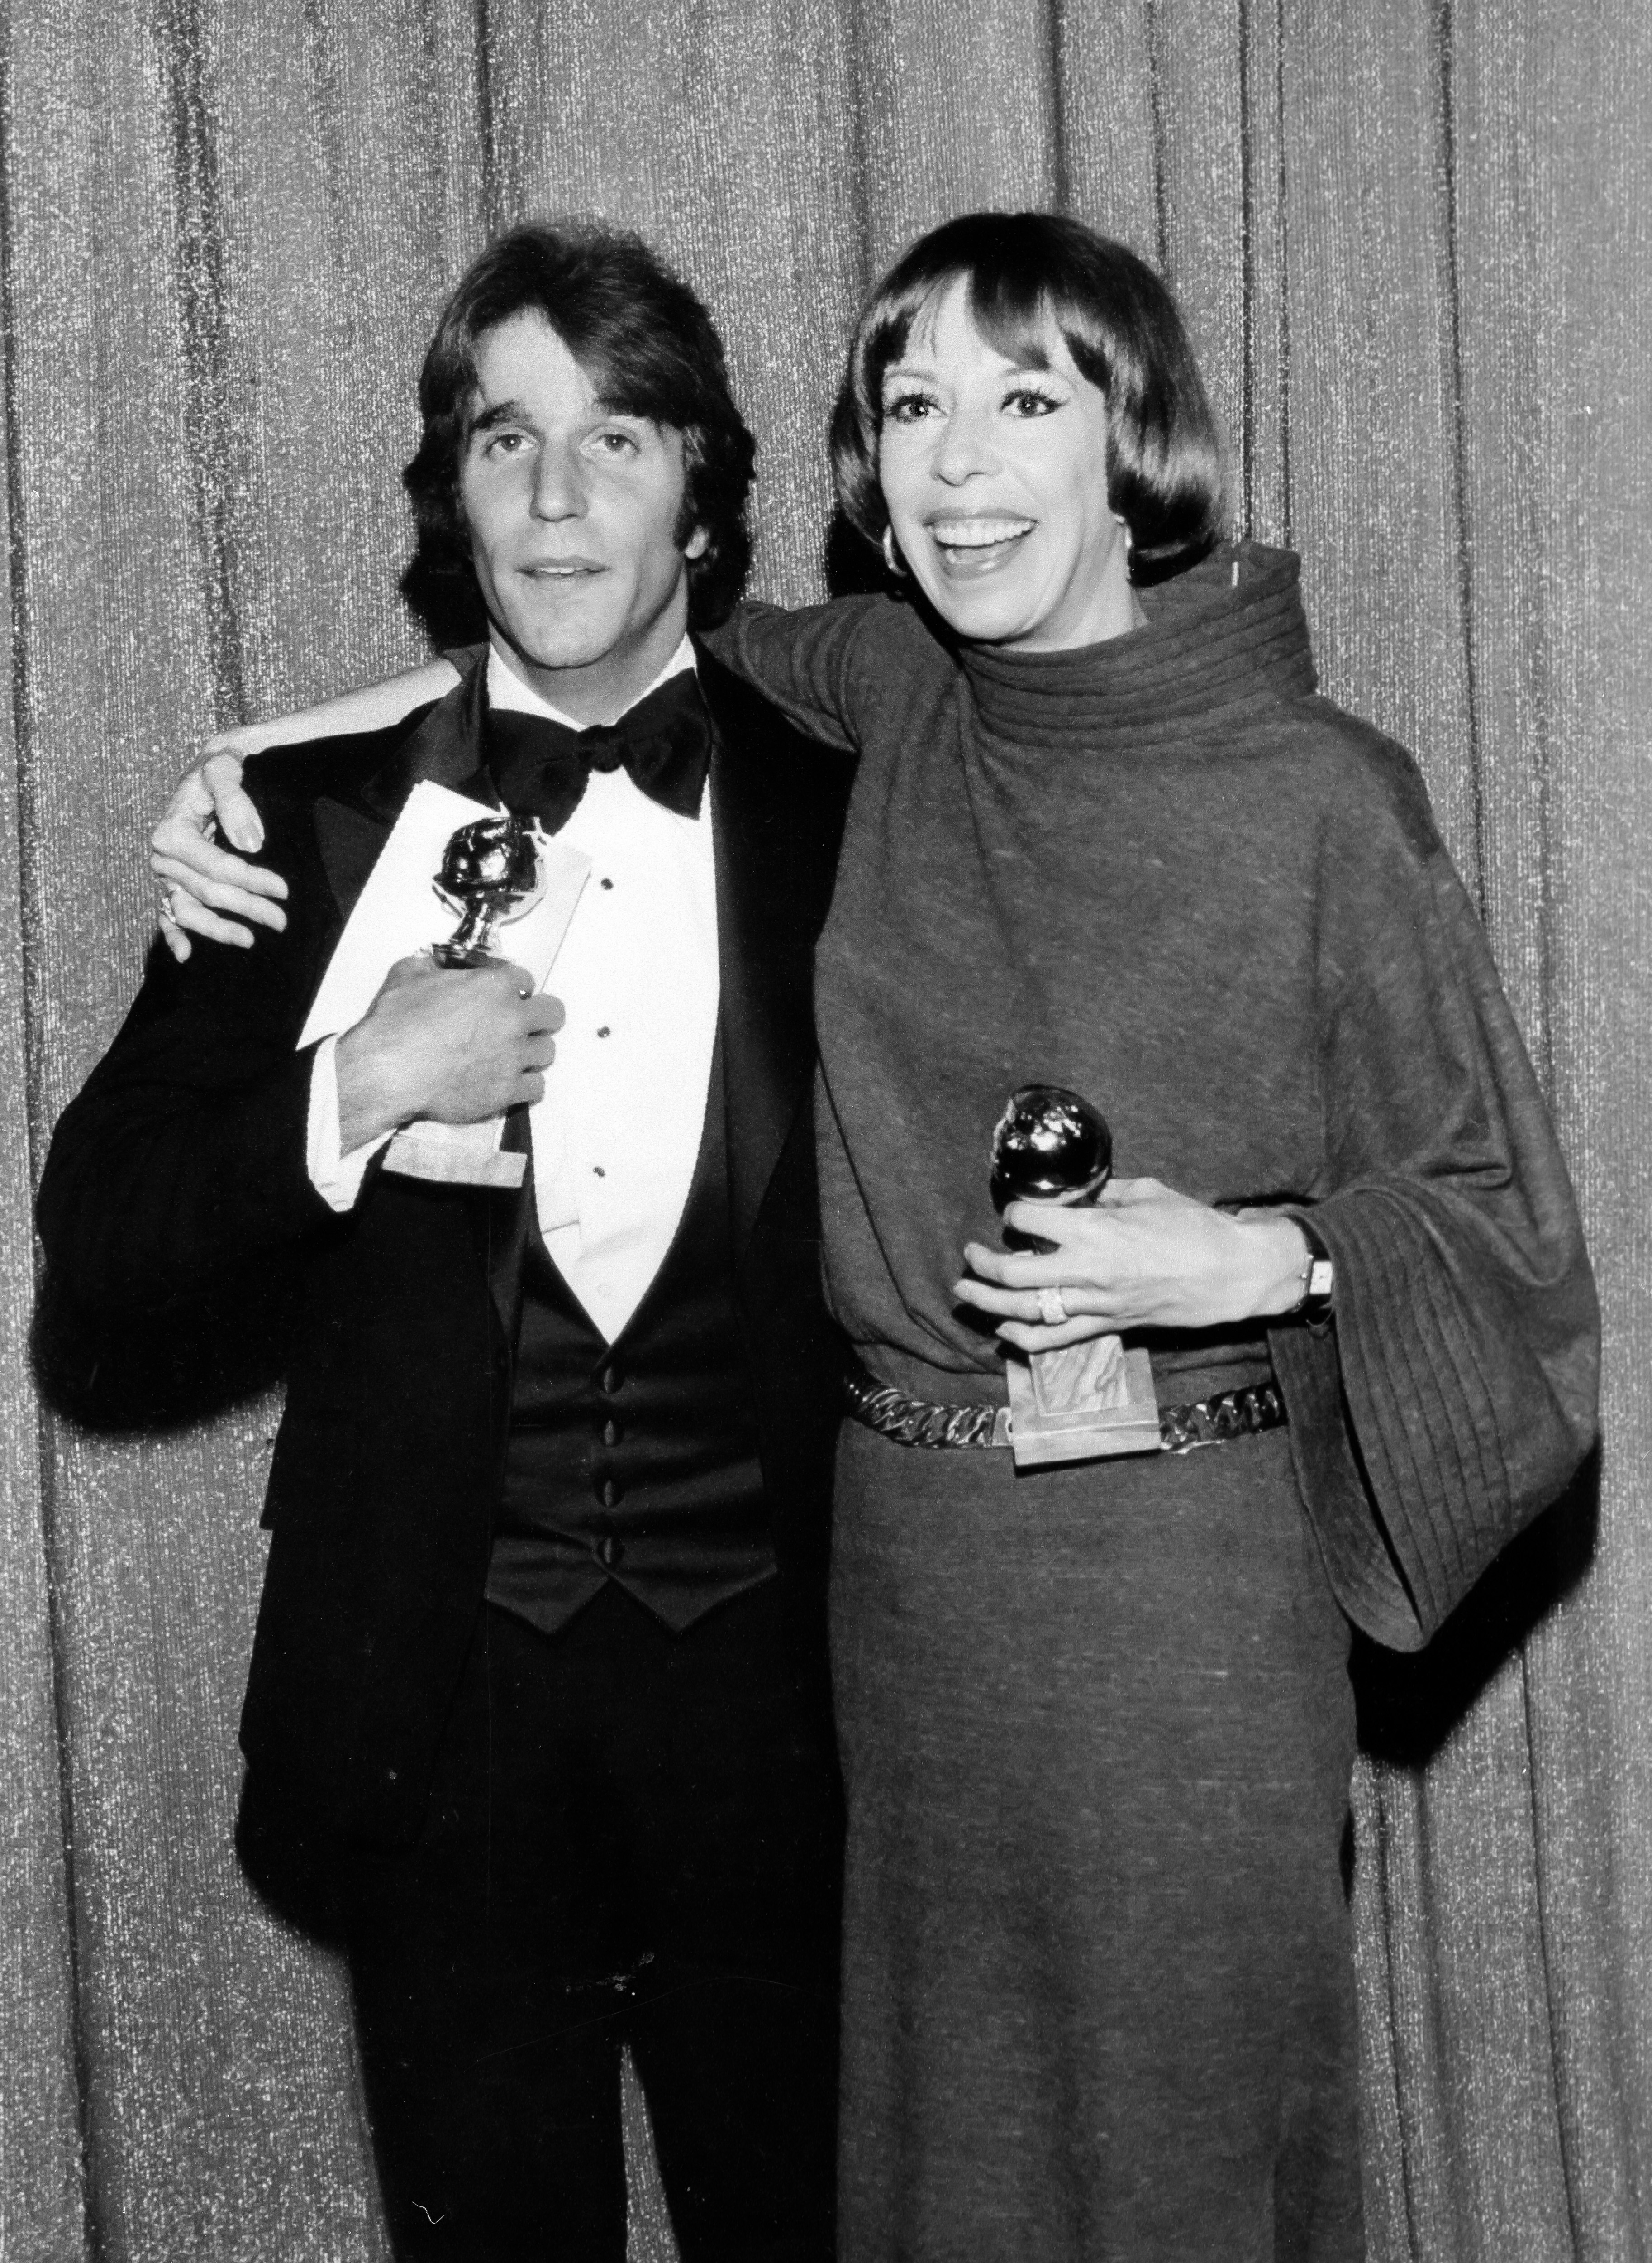 1977 Henry Winkler, Carol Burnett (Actor, Actress TV comedy- Happy Days, The Carol Burnett Show), 34th Golden Globes